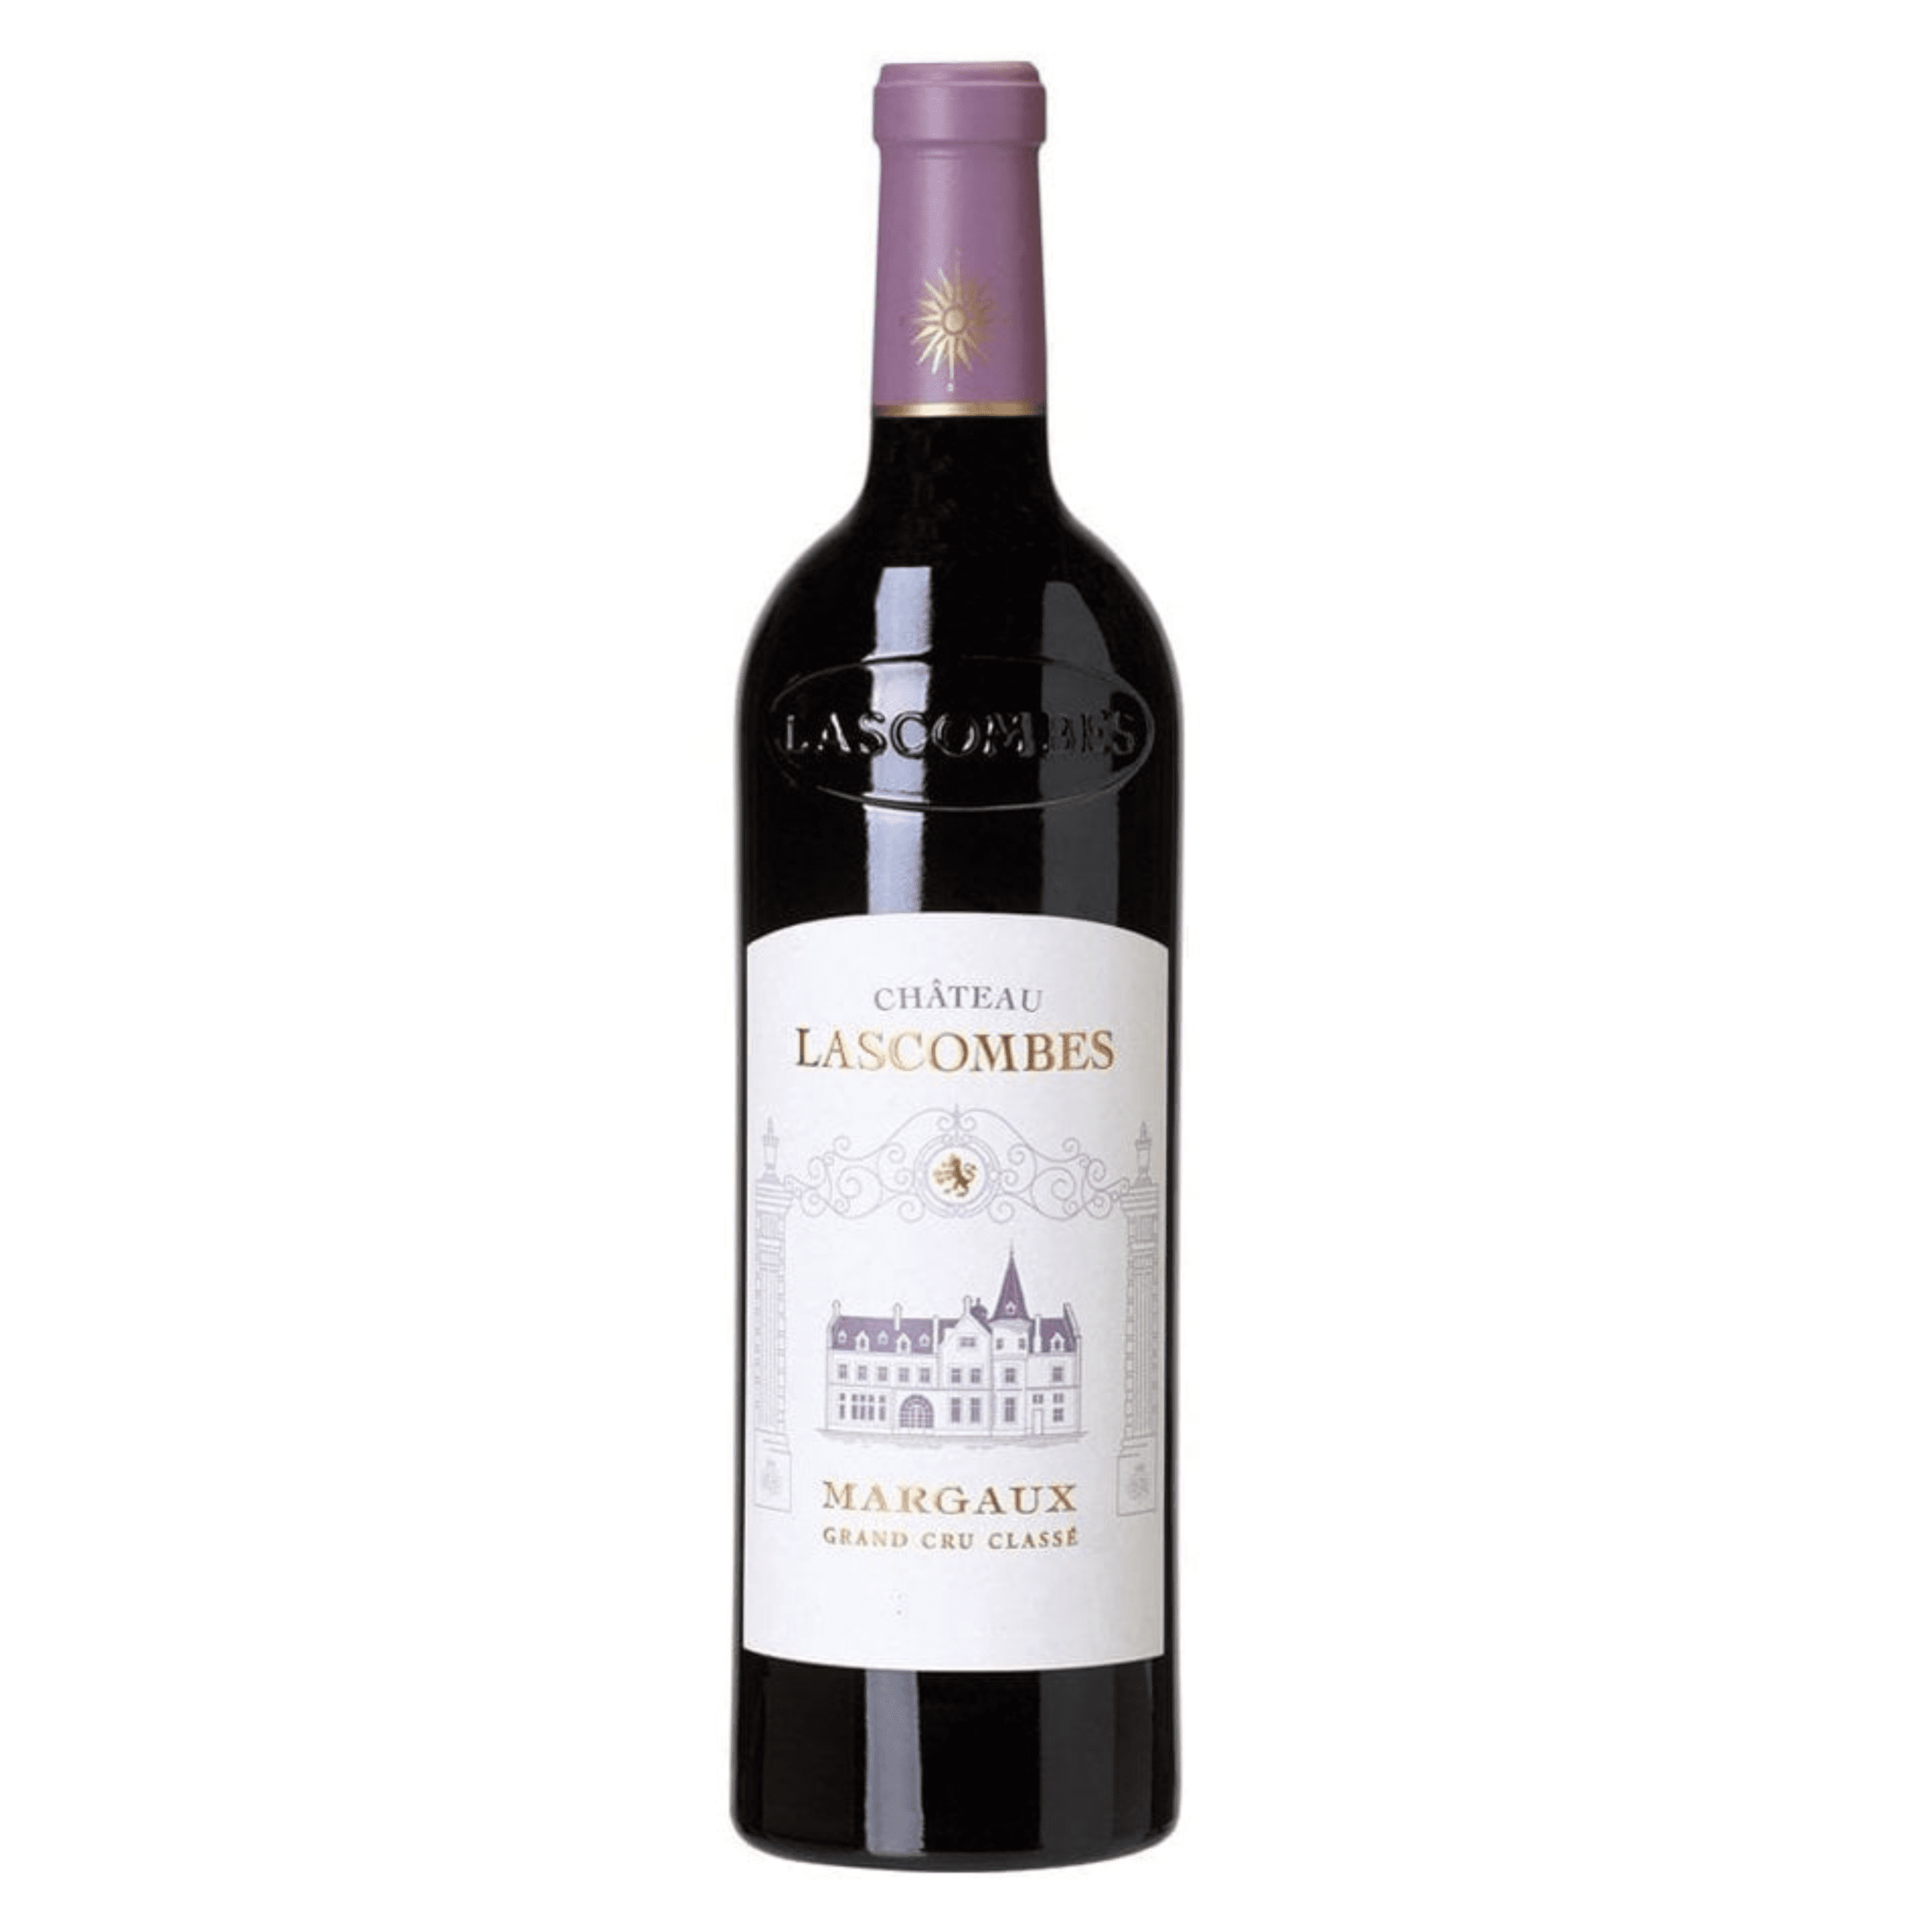 ไวน์แดง - Château Lascombes ไวน์แดงสุดหรูจากไร่องุ่นระดับ Grand Cru Classe